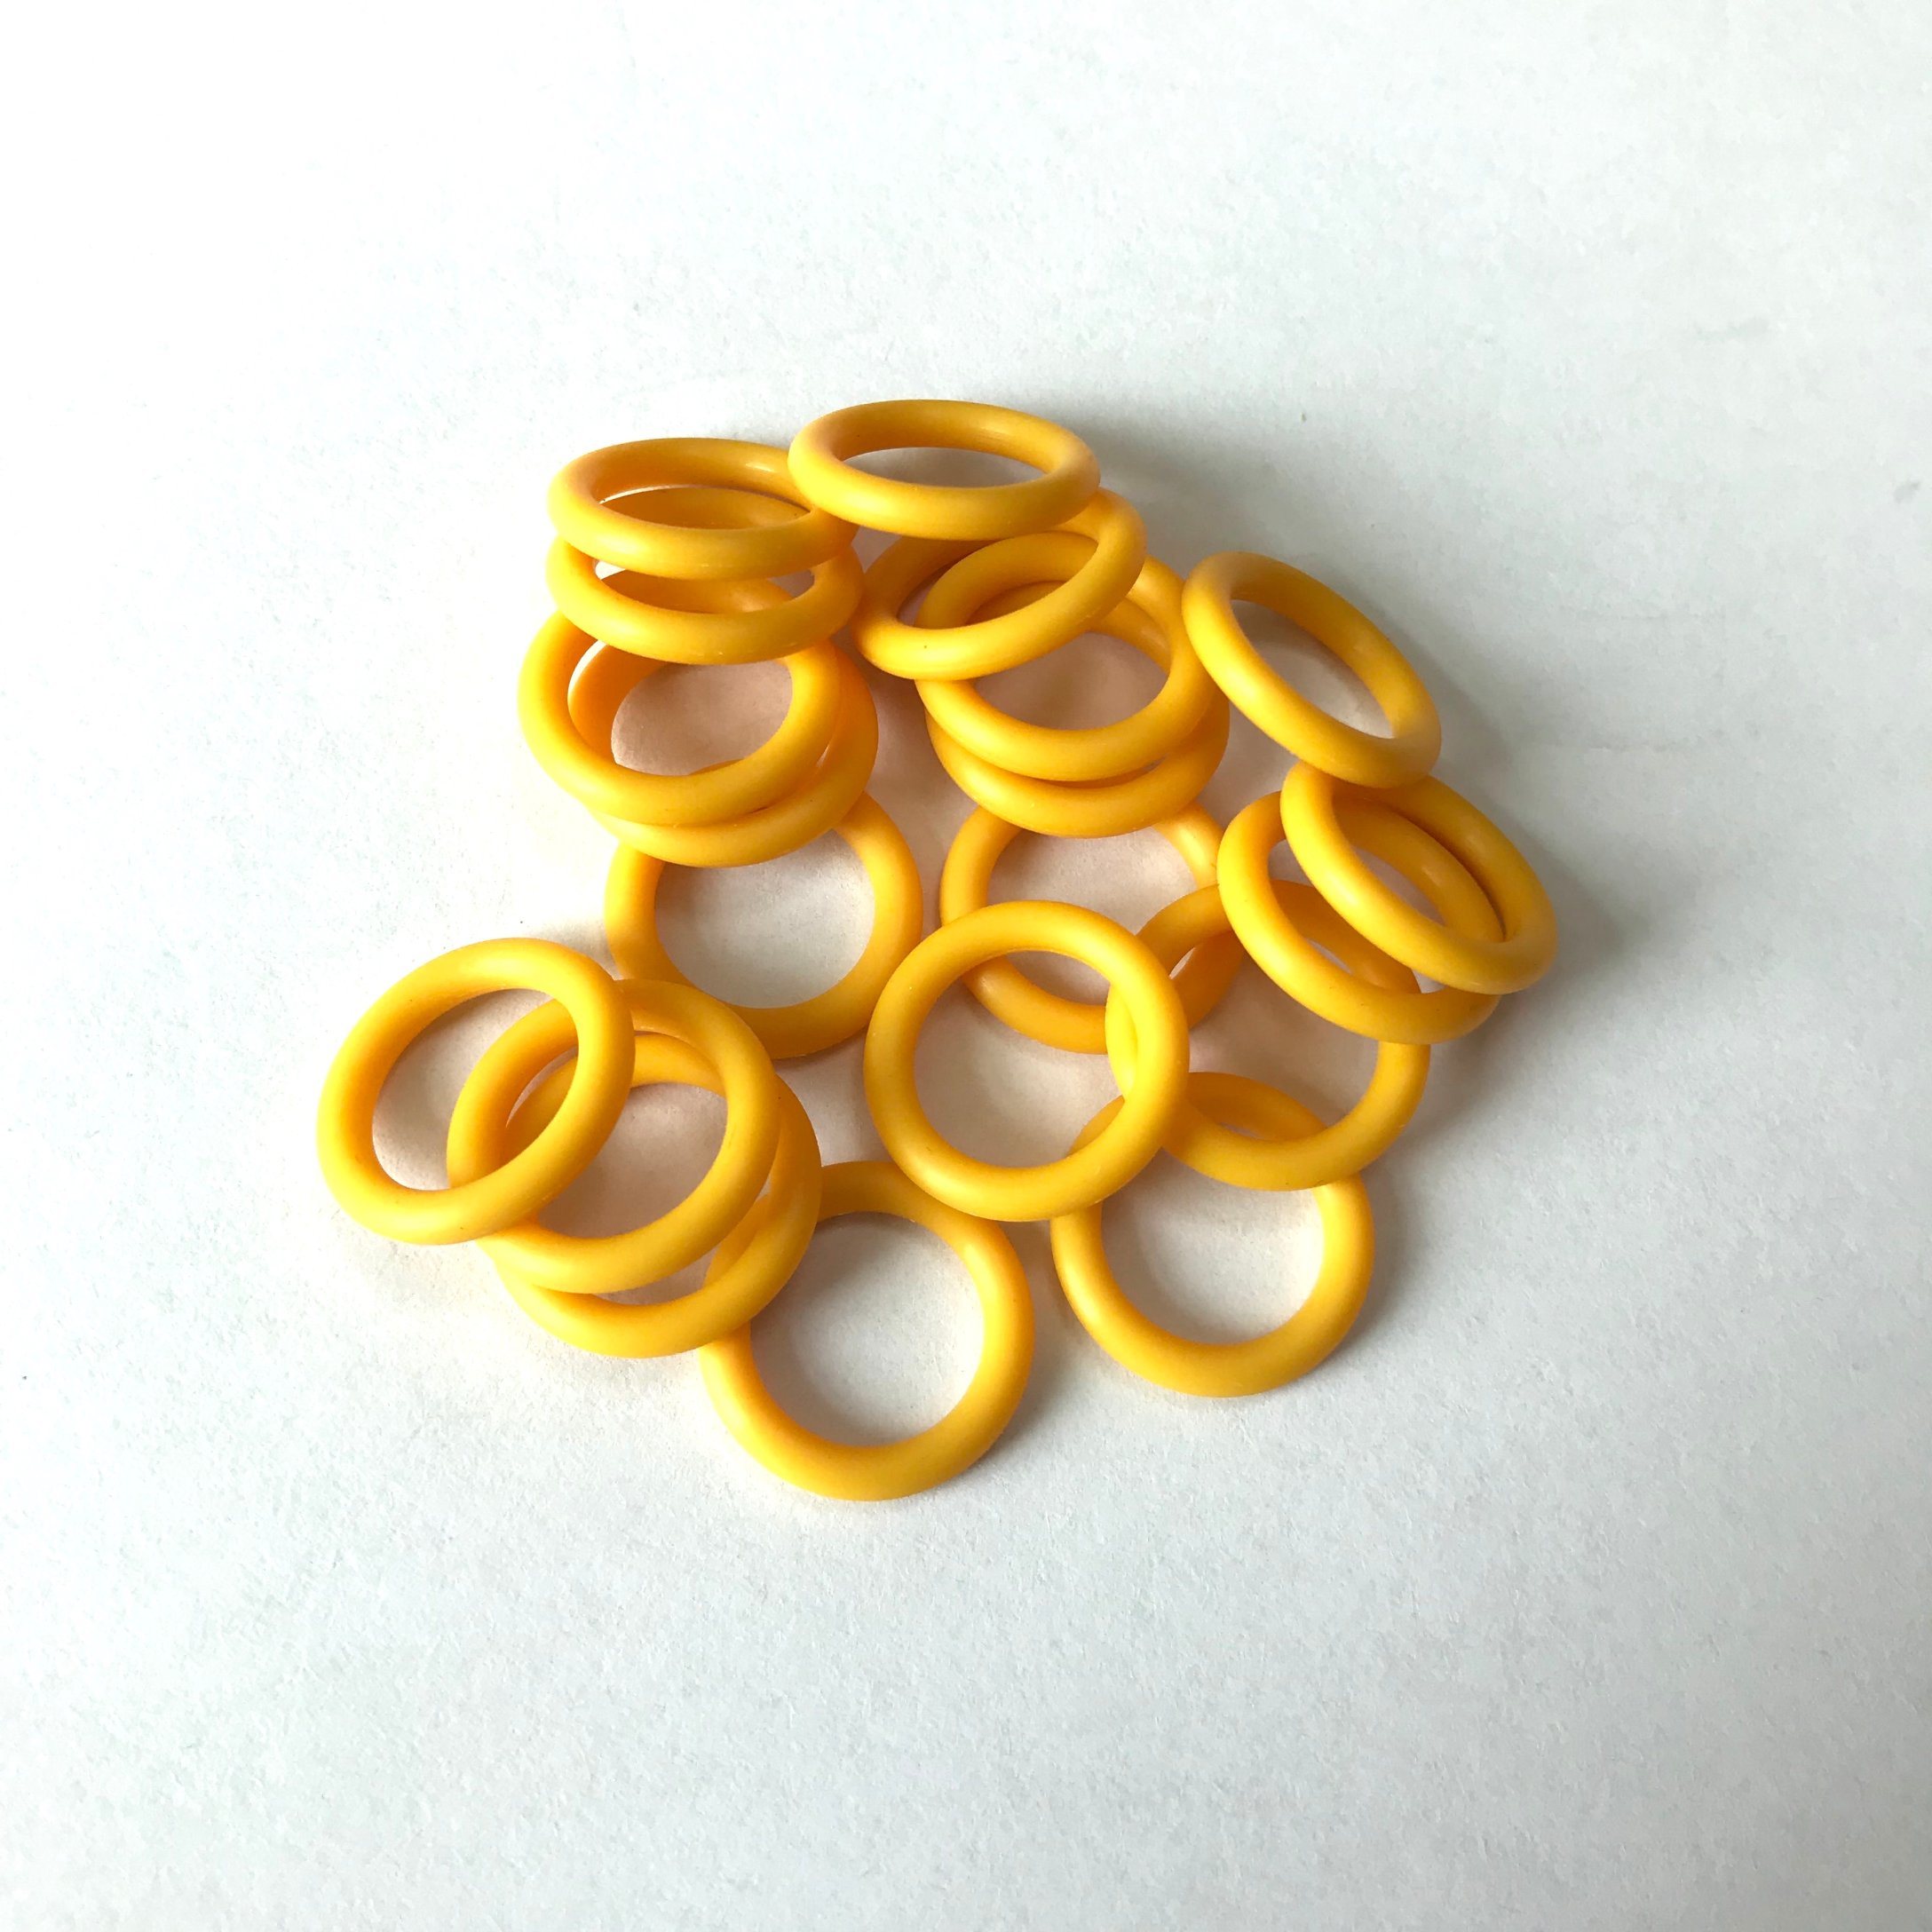 FDA Grade Toys Seal Yellow Sil Rubbeer O-Ring